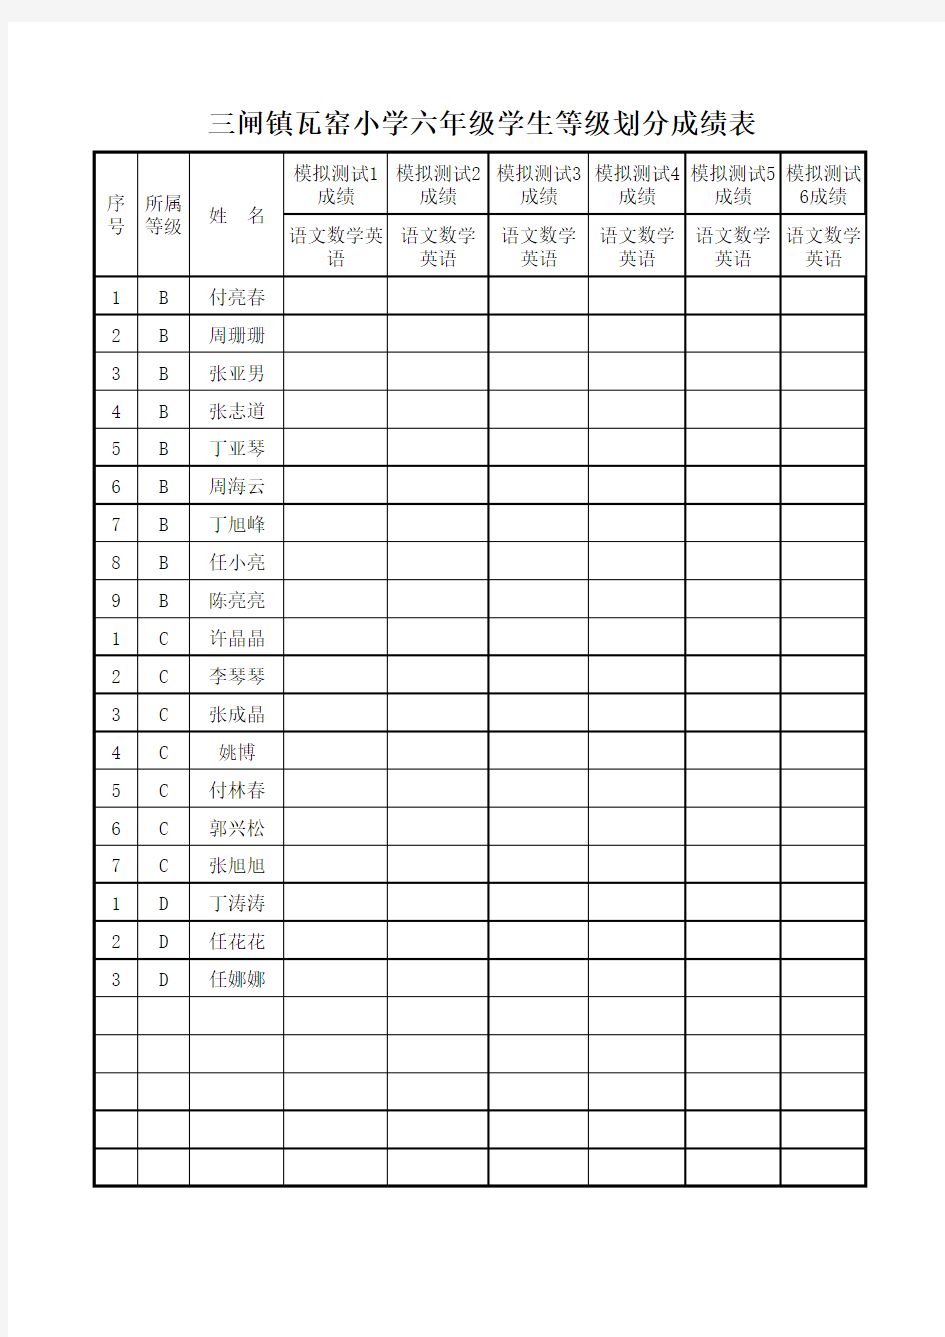 六年级学生等级划分成绩表